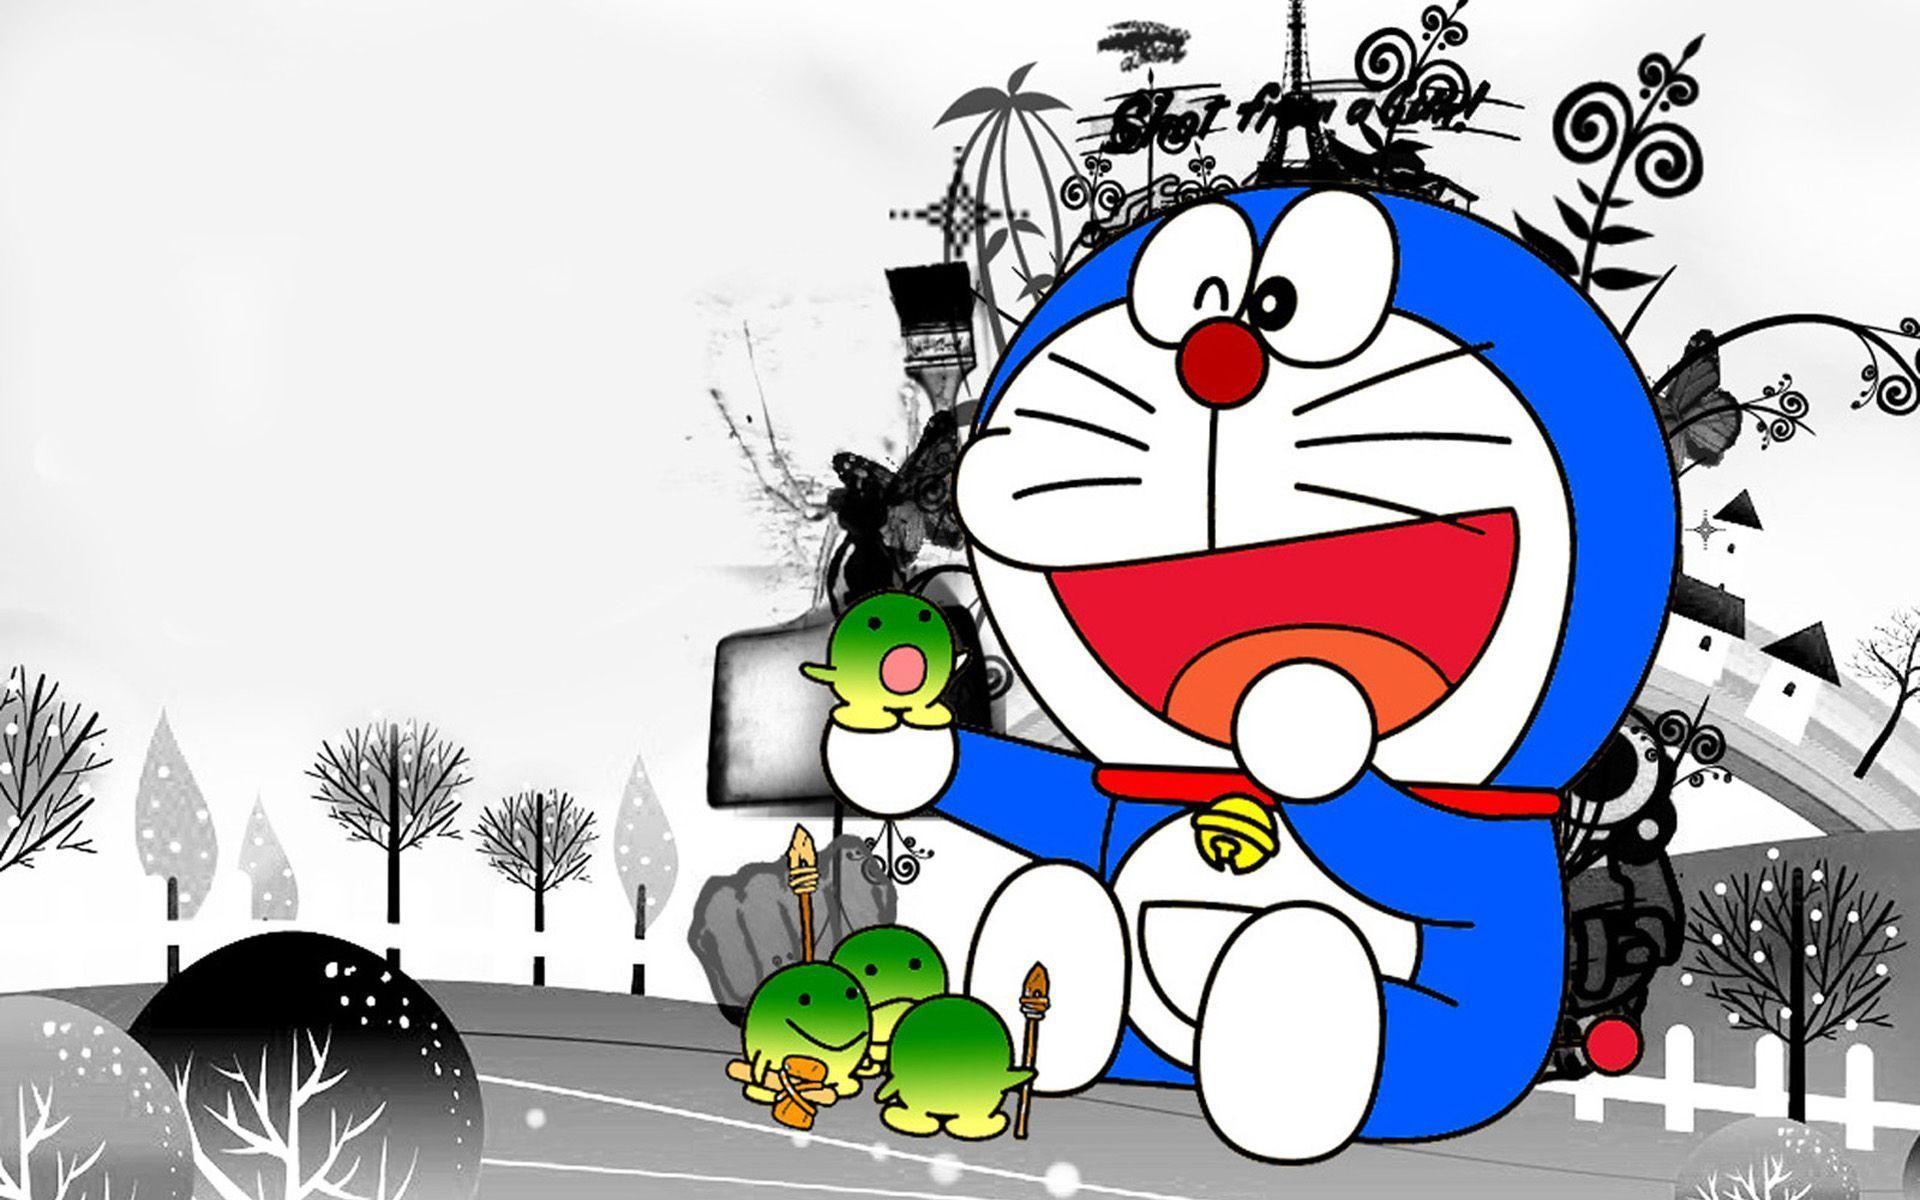 Anime Doraemon 4k Ultra HD Wallpaper by こたまんぼう